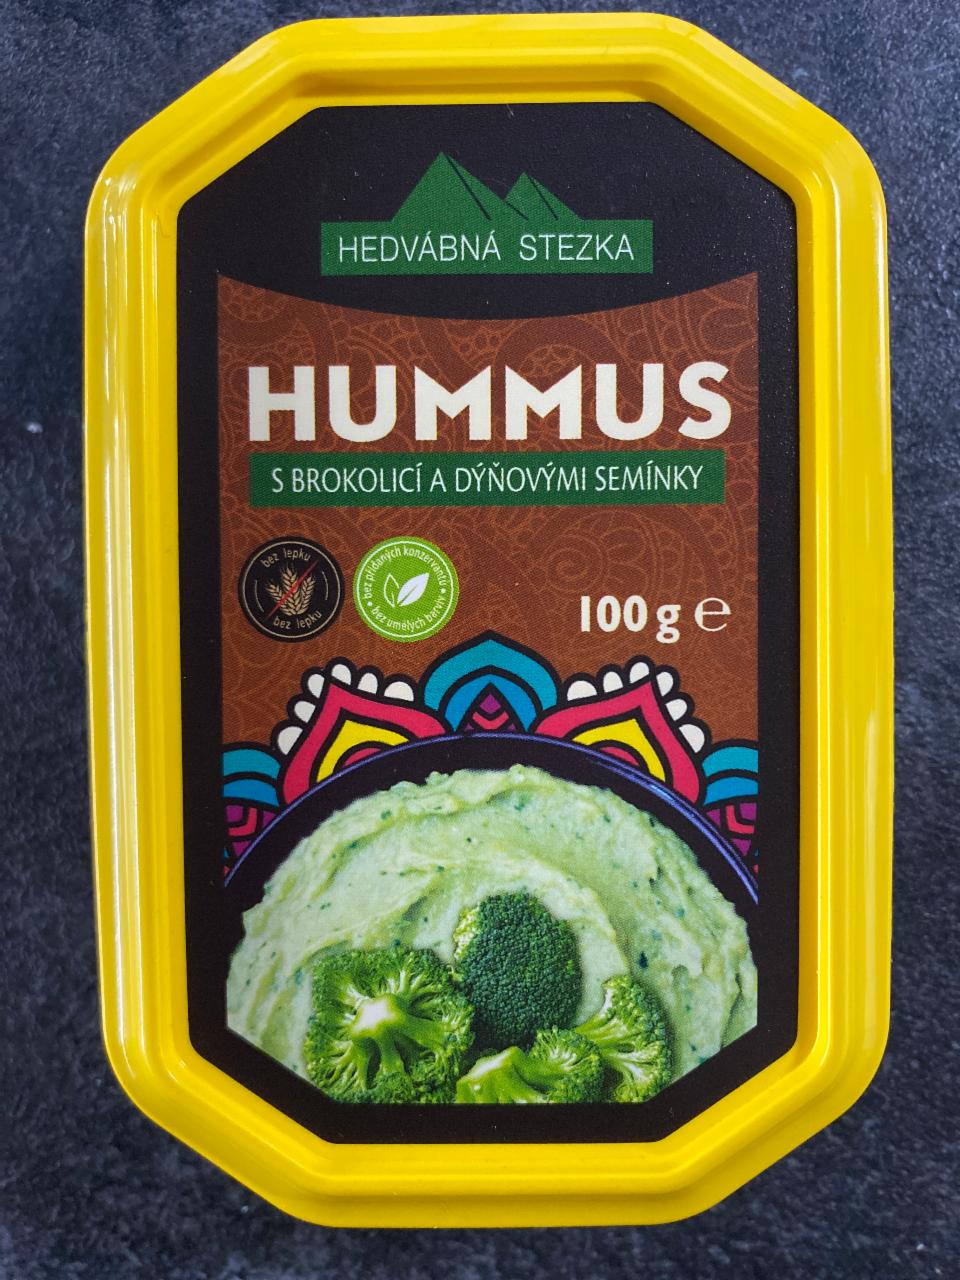 Fotografie - Hummus s brokolicí a dýňovými semínky Hedvábná stezka